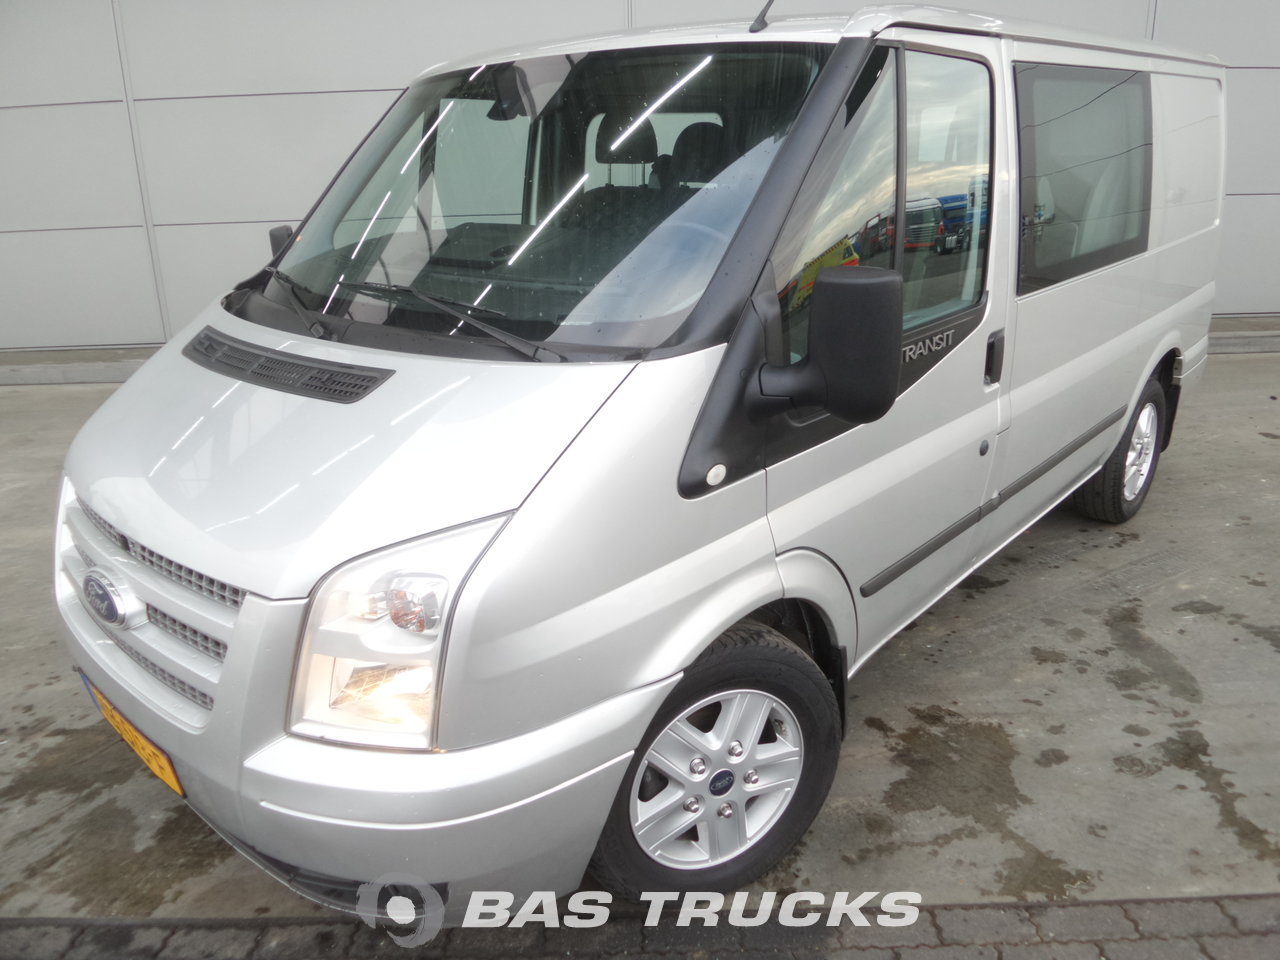 ebay vans for sale no vat